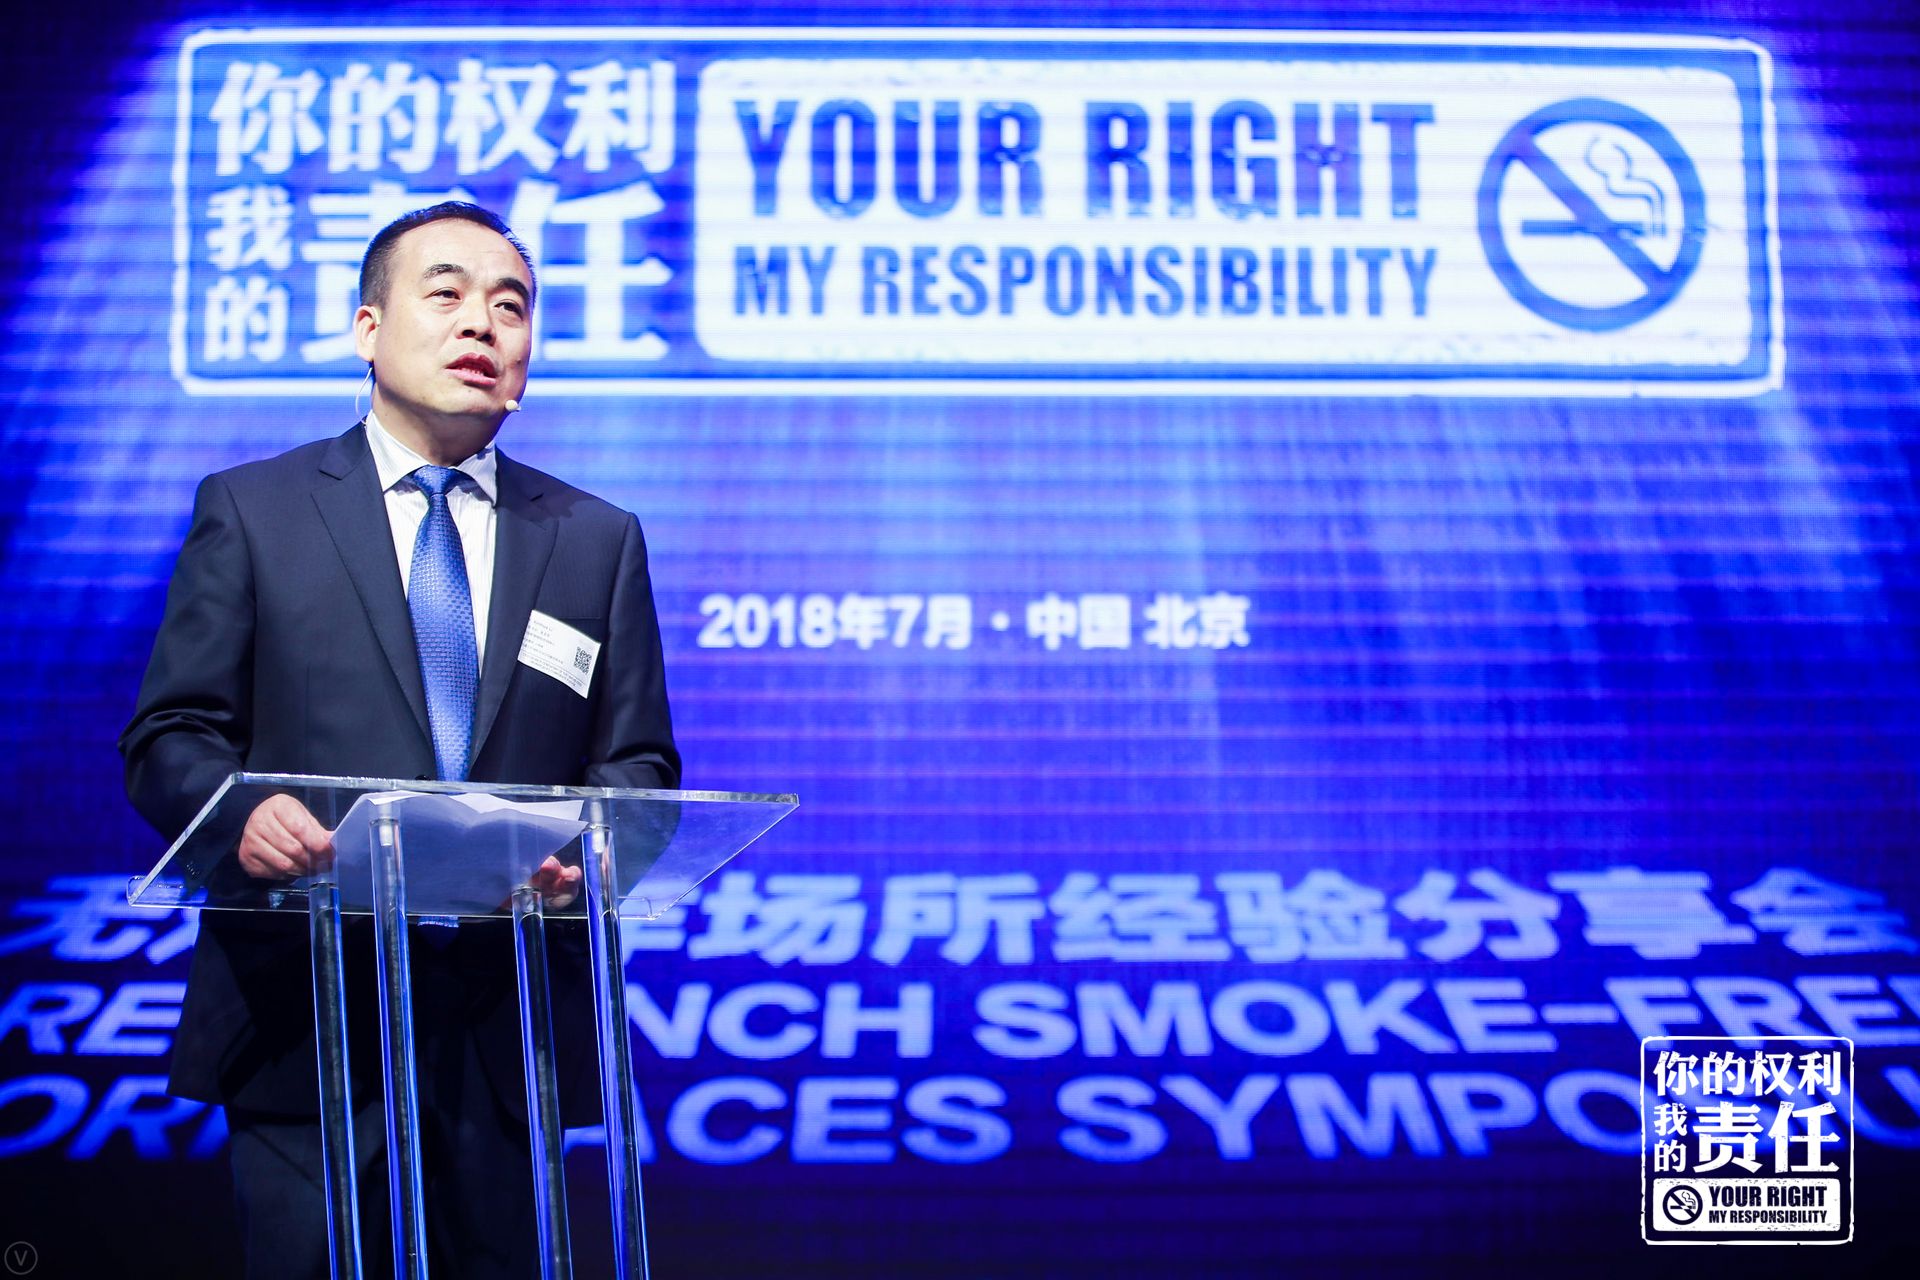 无烟工作场所倡议活动在京举办 中国科学网www.minimouse.com.cn